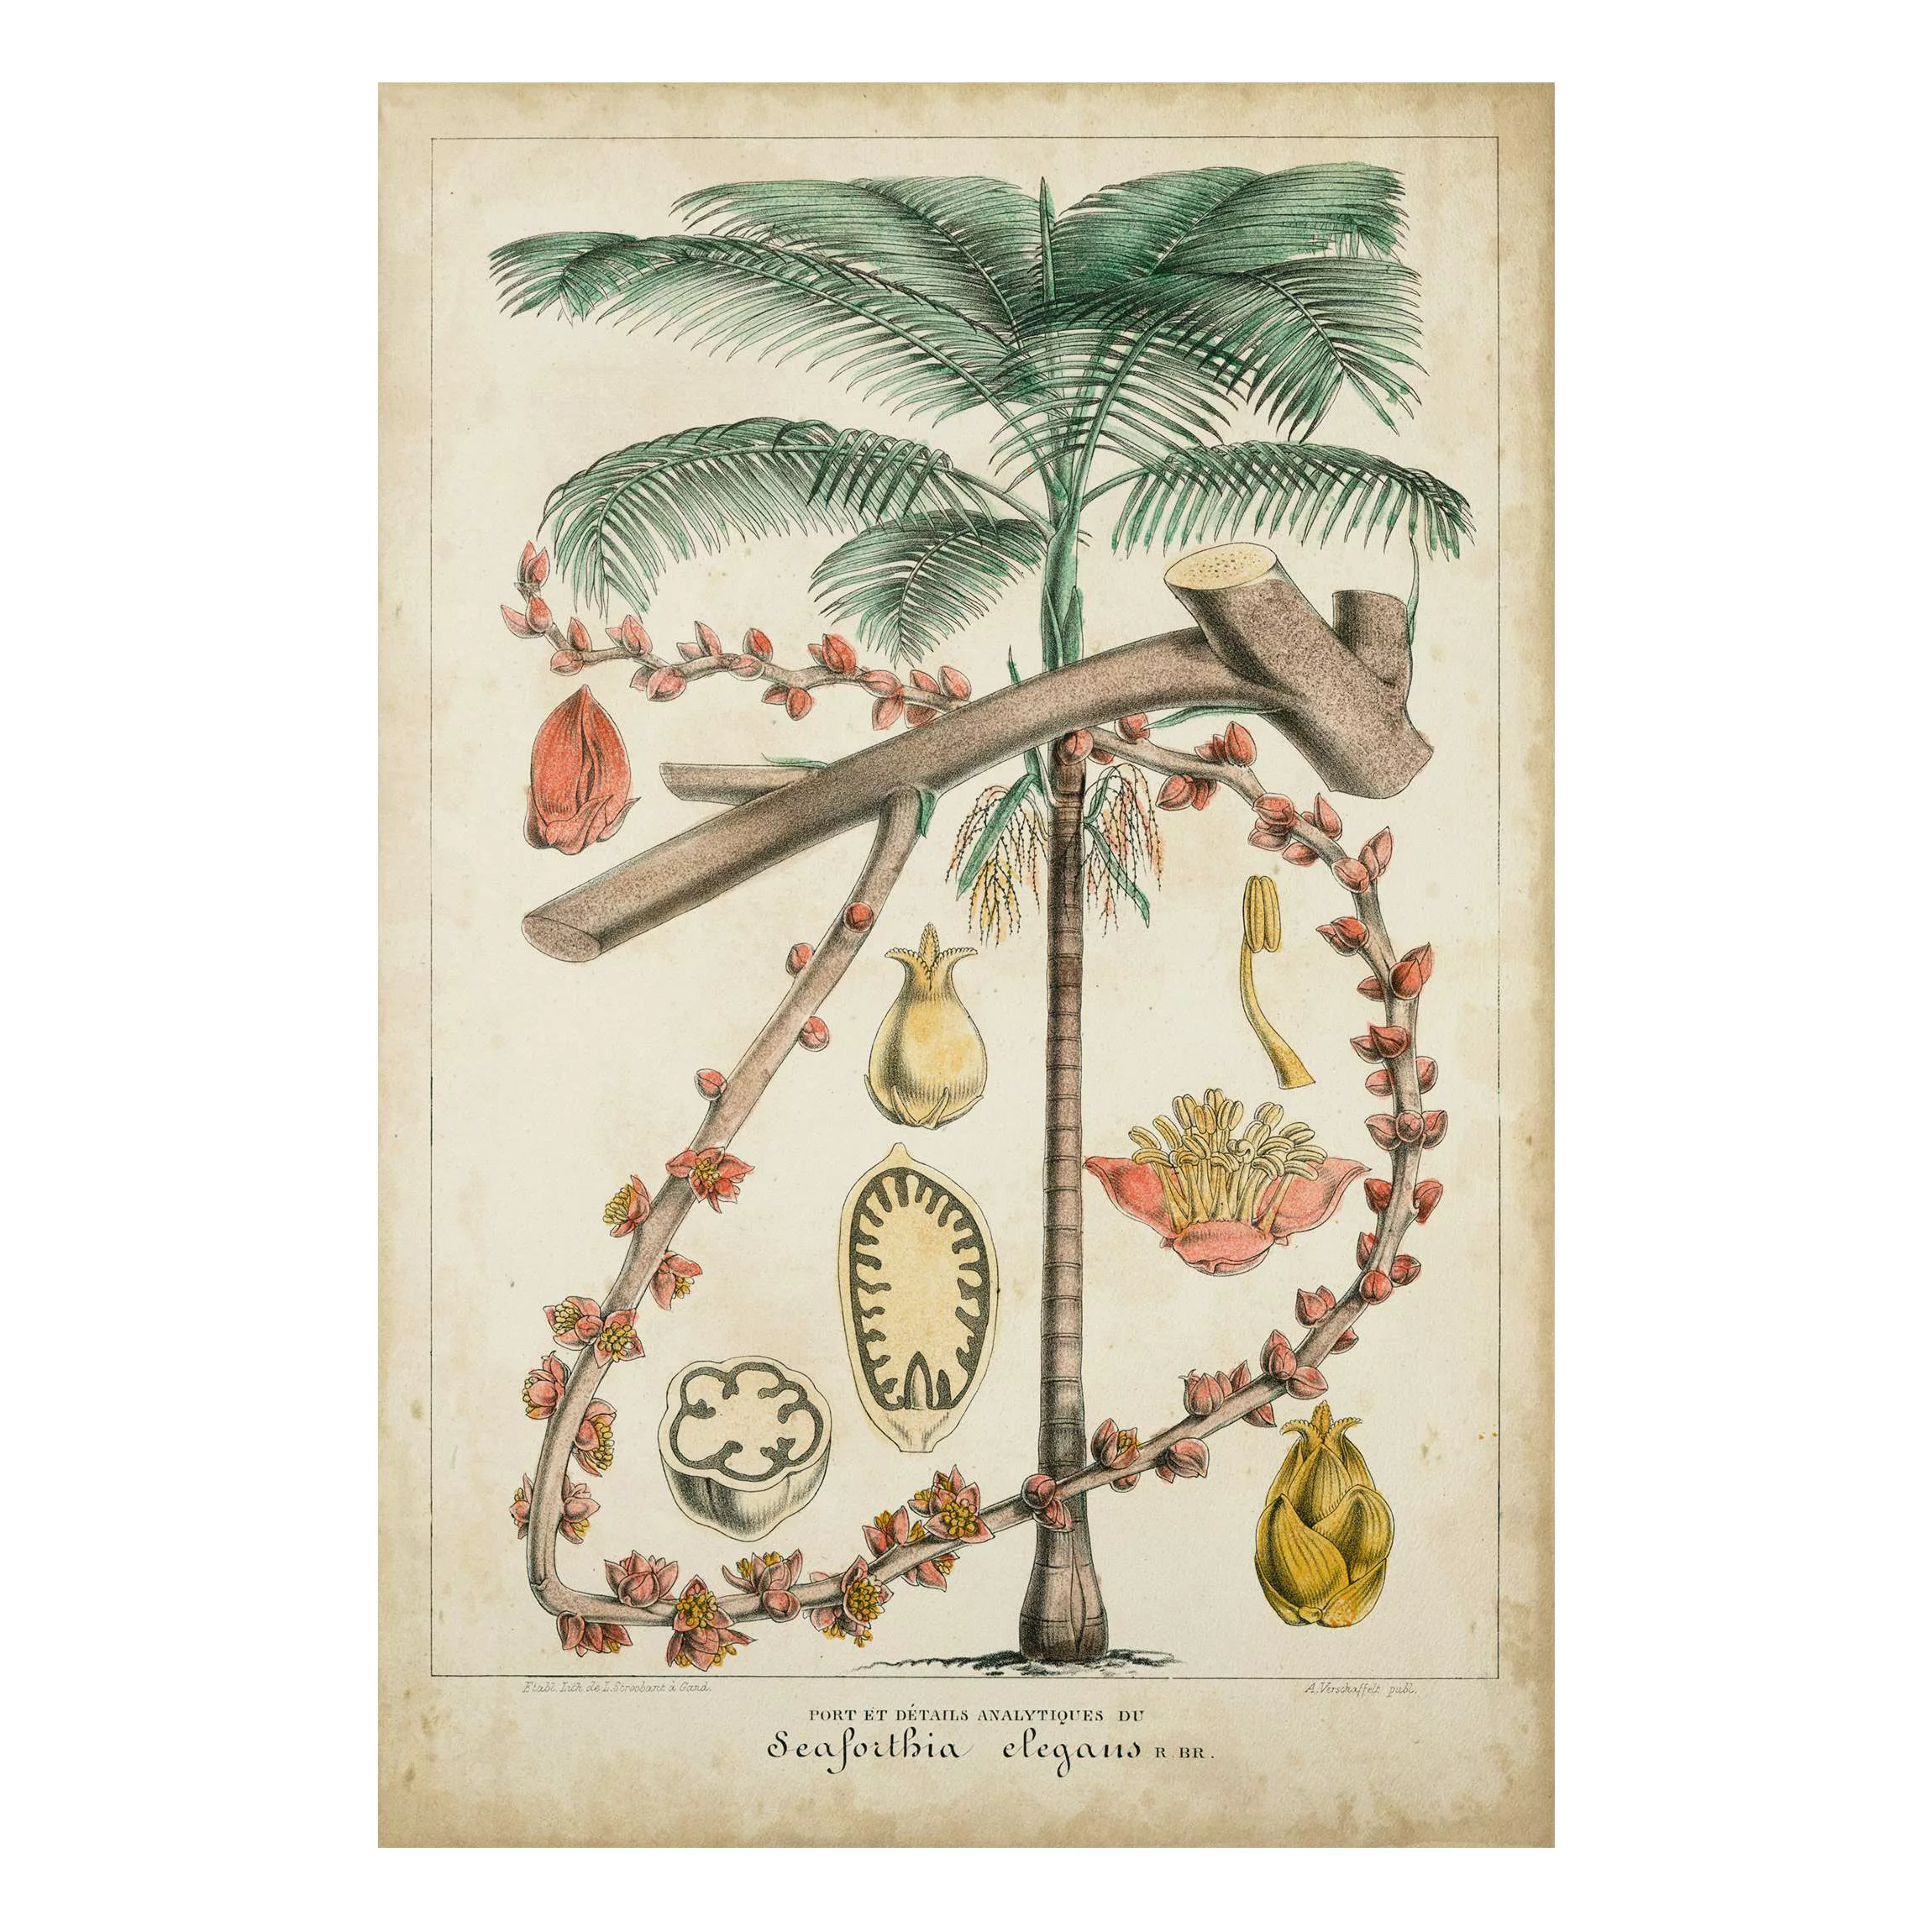 Forexbild Blumen - Hochformat Vintage Lehrtafel Exotische palmen II günstig online kaufen